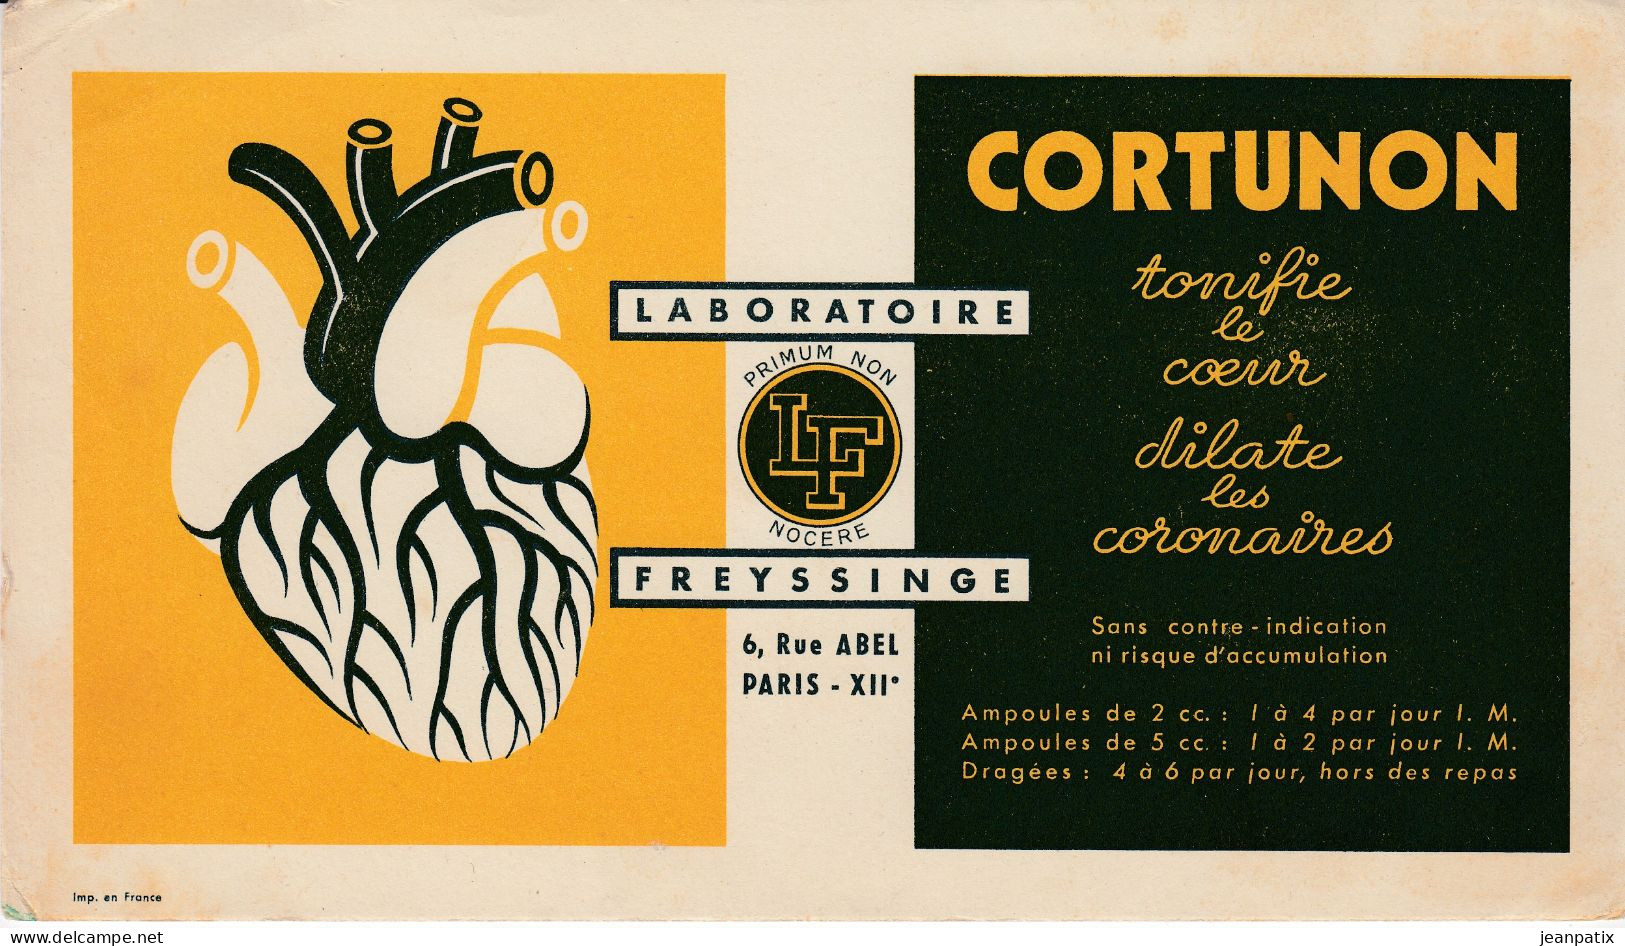 BUVARD & BLOTTER - Pharmacie - CORTUNON - Tonifie Le Coeur Dilate Les Coronaires - Laboratoires FREYSSINGUE - Paris - Chemist's